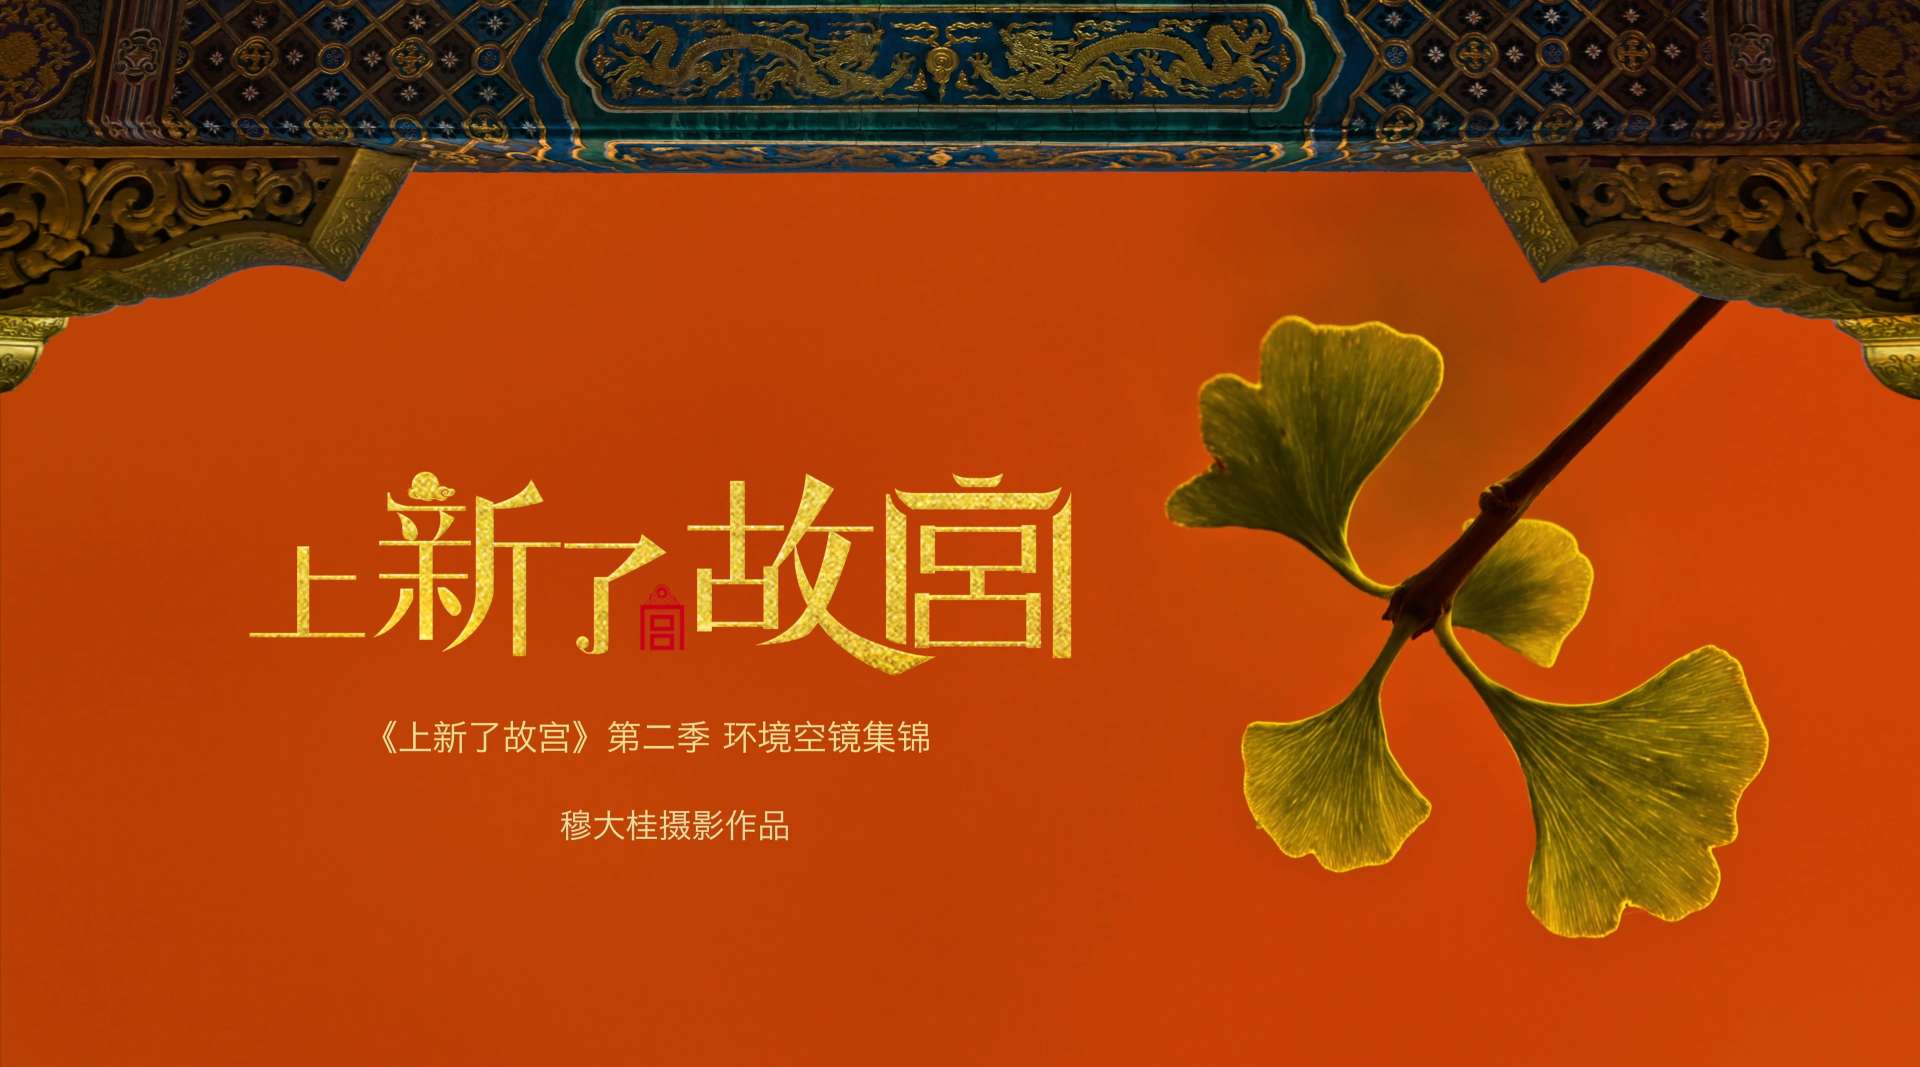 北京卫视《上新了.故宫》第二季环境空镜集锦